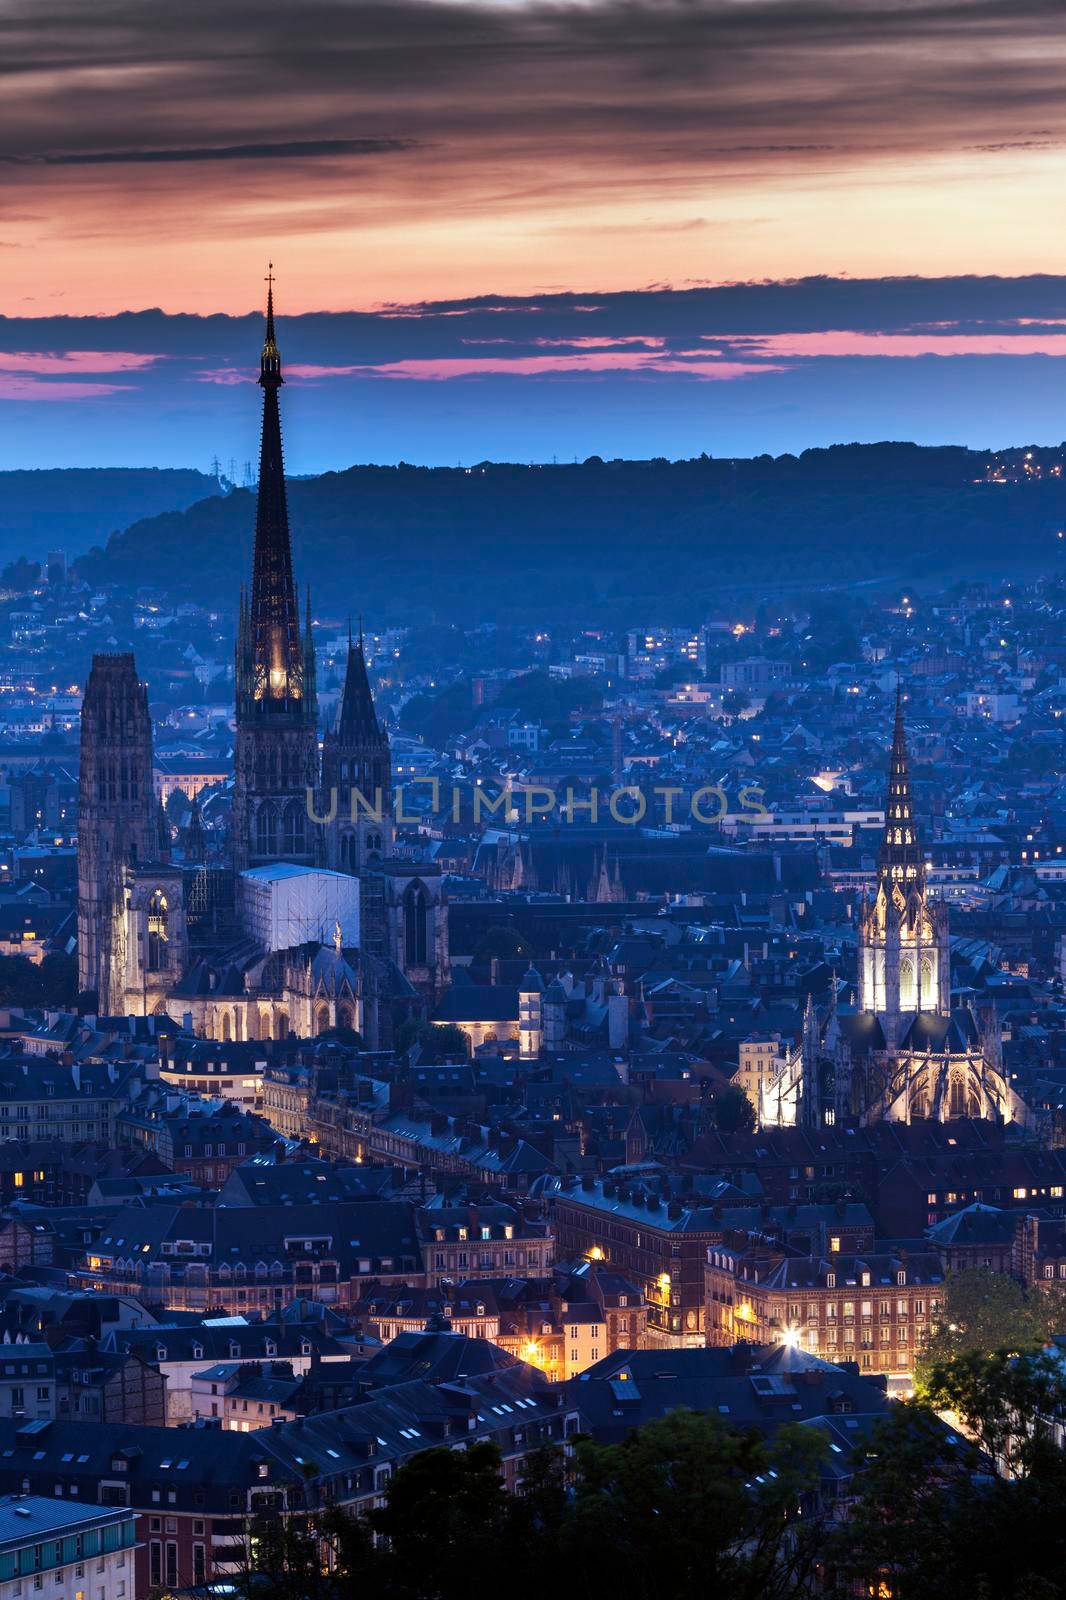 Panorama of Rouen at sunset by benkrut